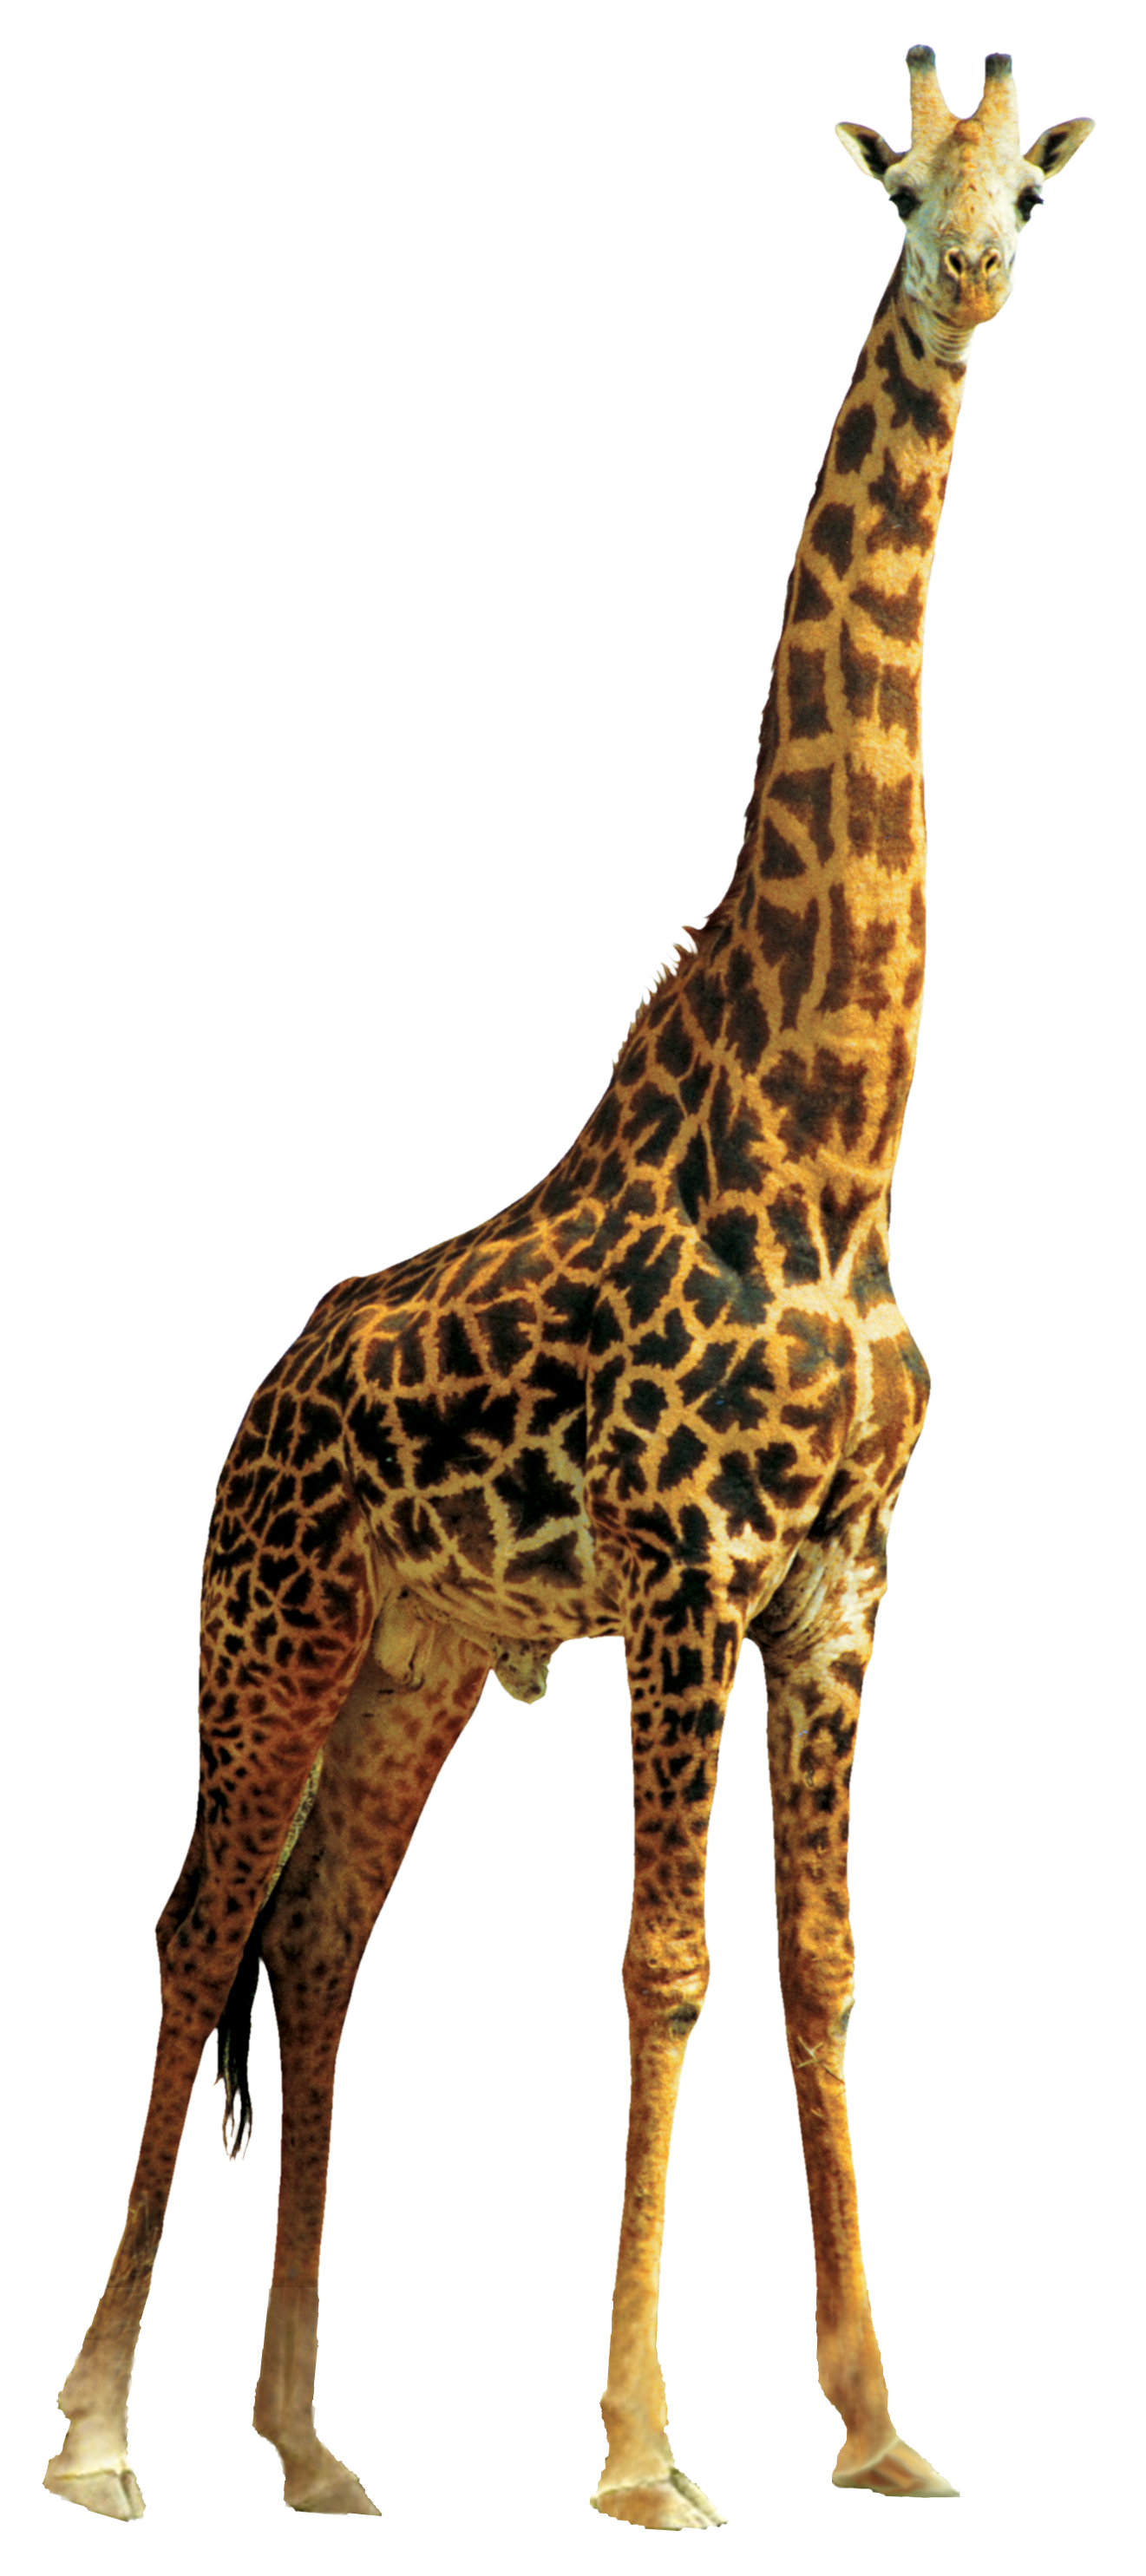 Imagen Transparente de la jirafa